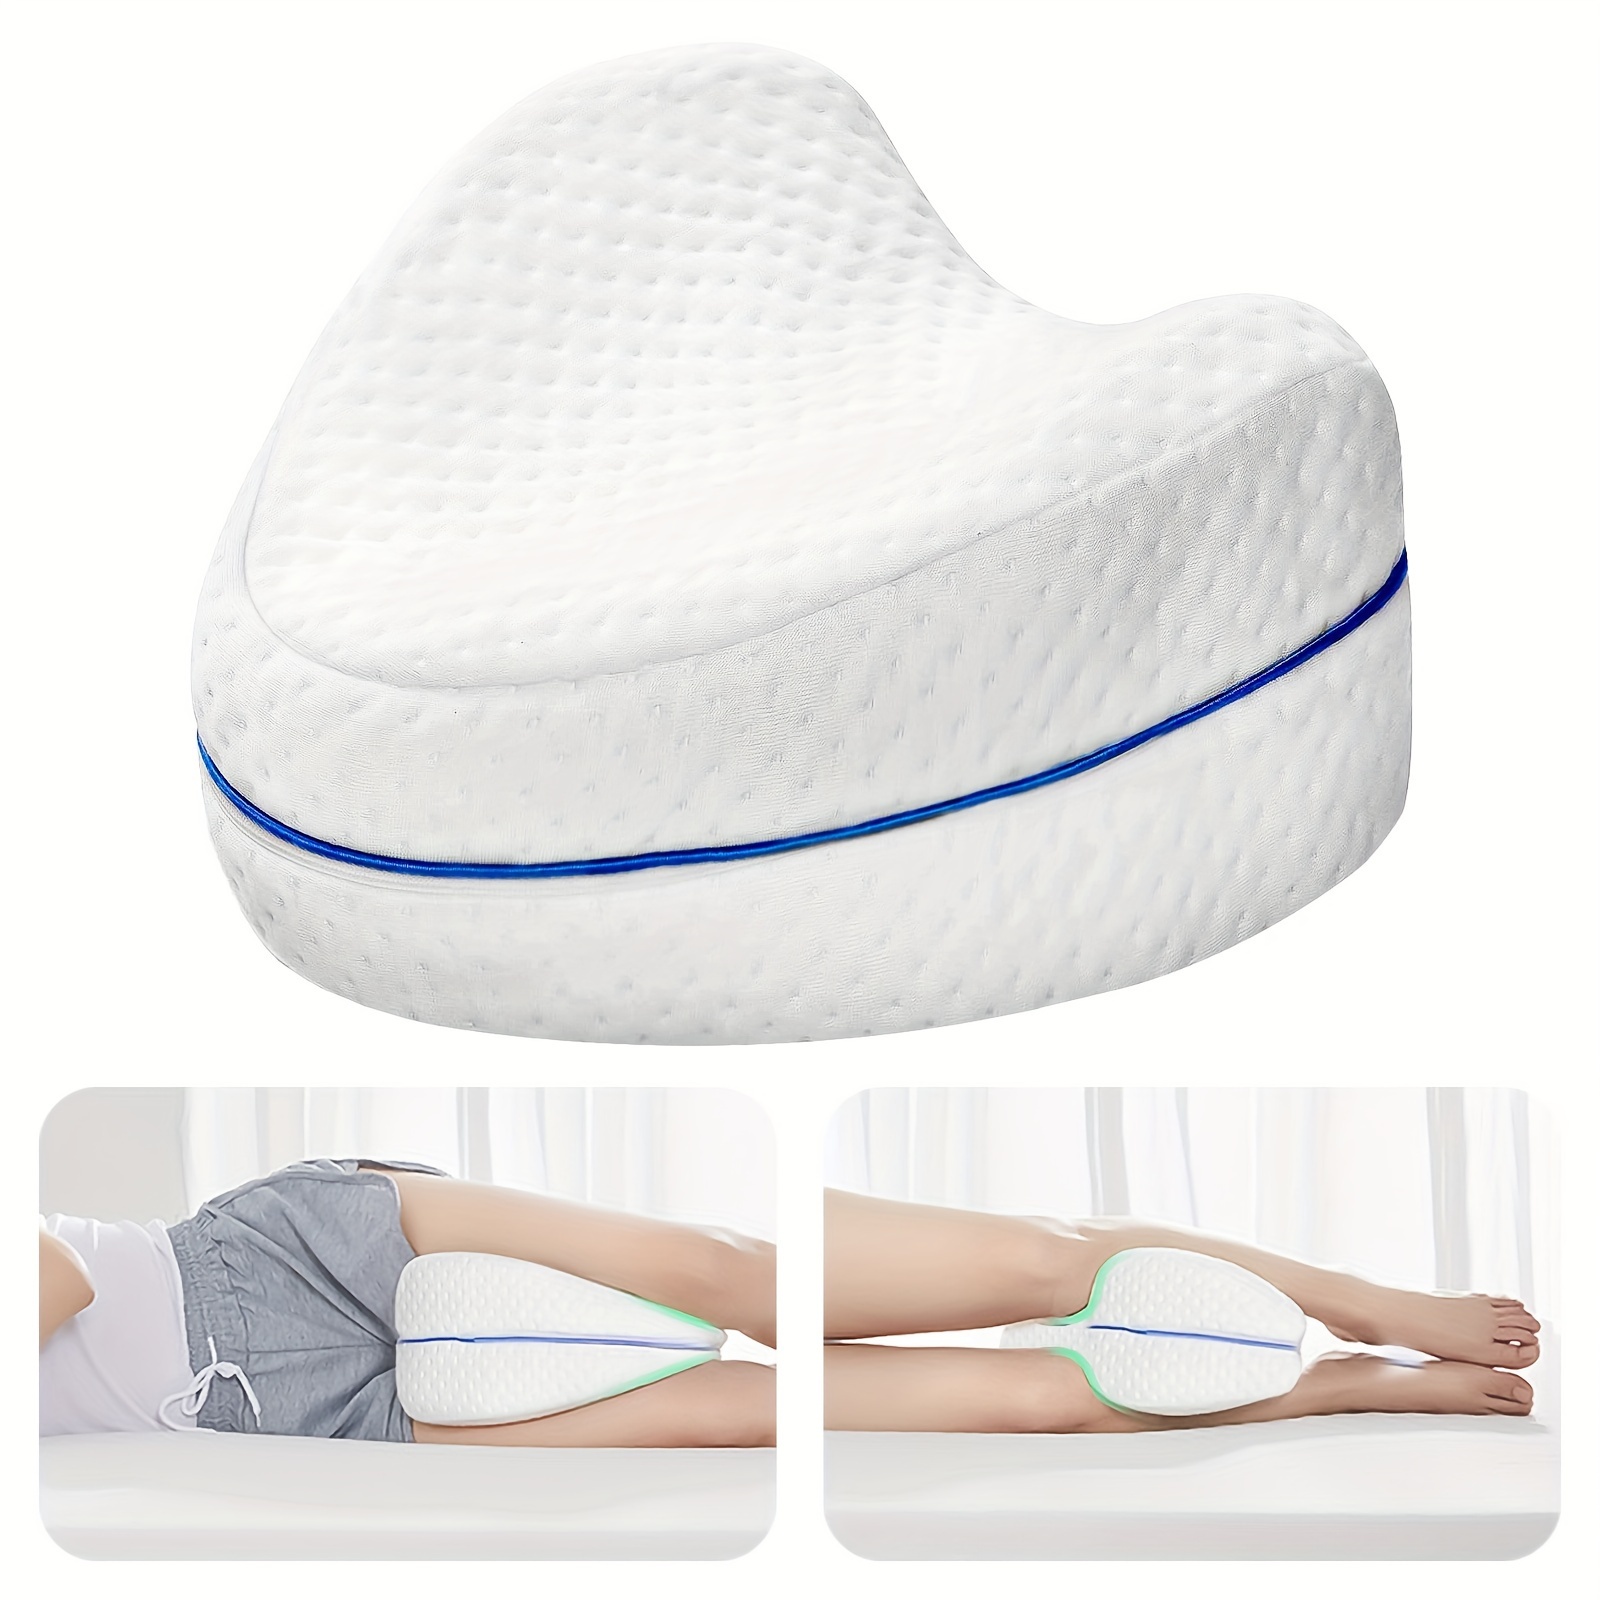  Almohada de cuña de elevación de piernas, espuma de rodilla  para dormir, después de la cirugía, almohadas para reposar las piernas,  cojín de apoyo para la rodilla, almohada médica elevada, elevador